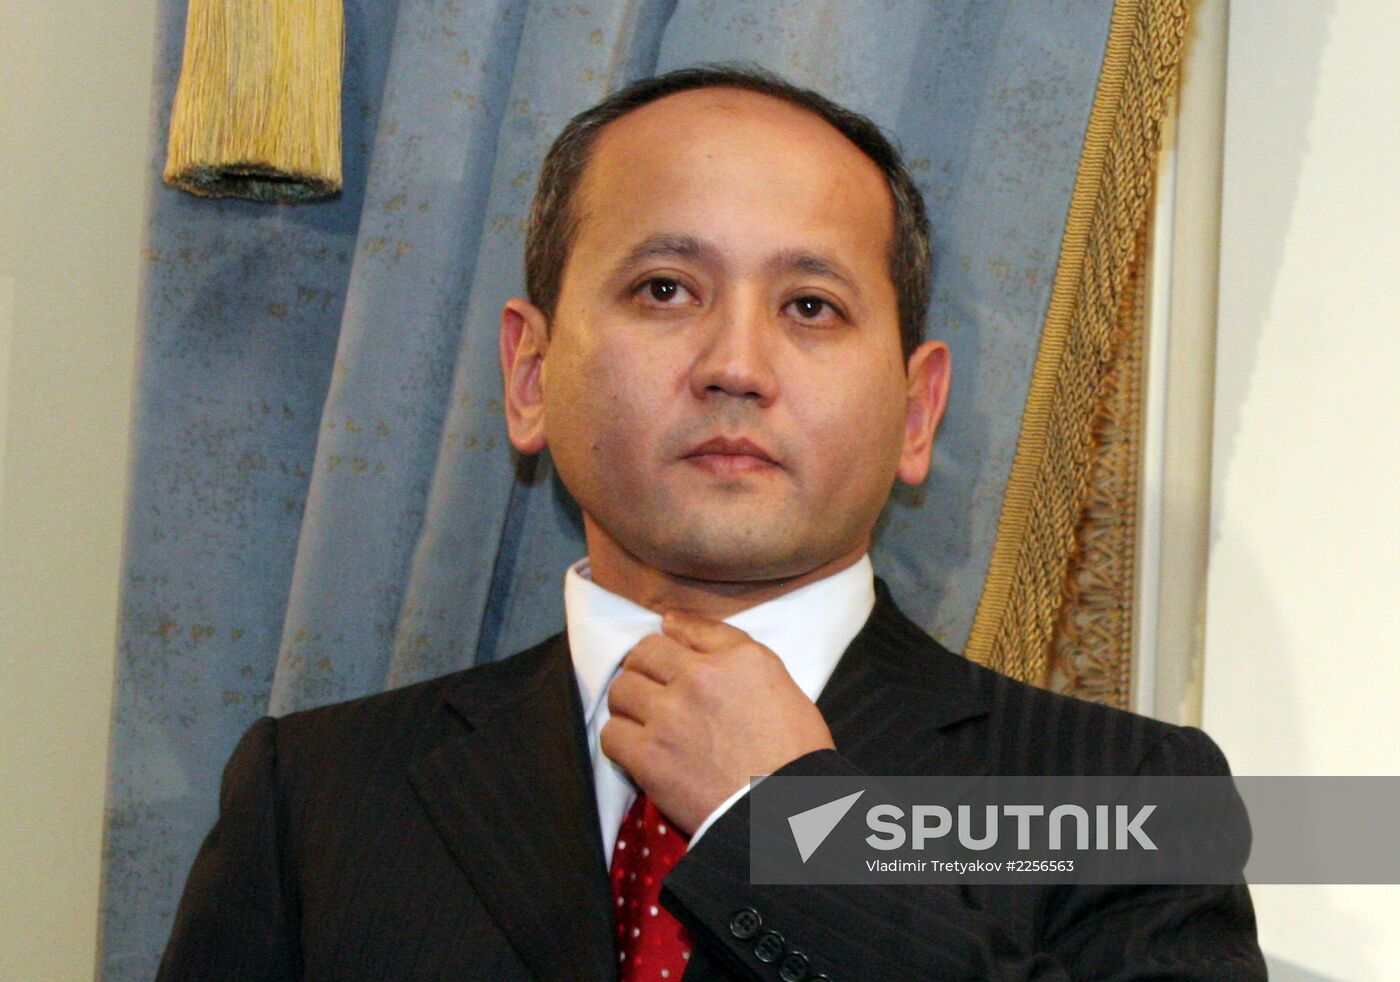 Mukhtar Ablyazov, ex-Head, Board of Directors, BTA Bank